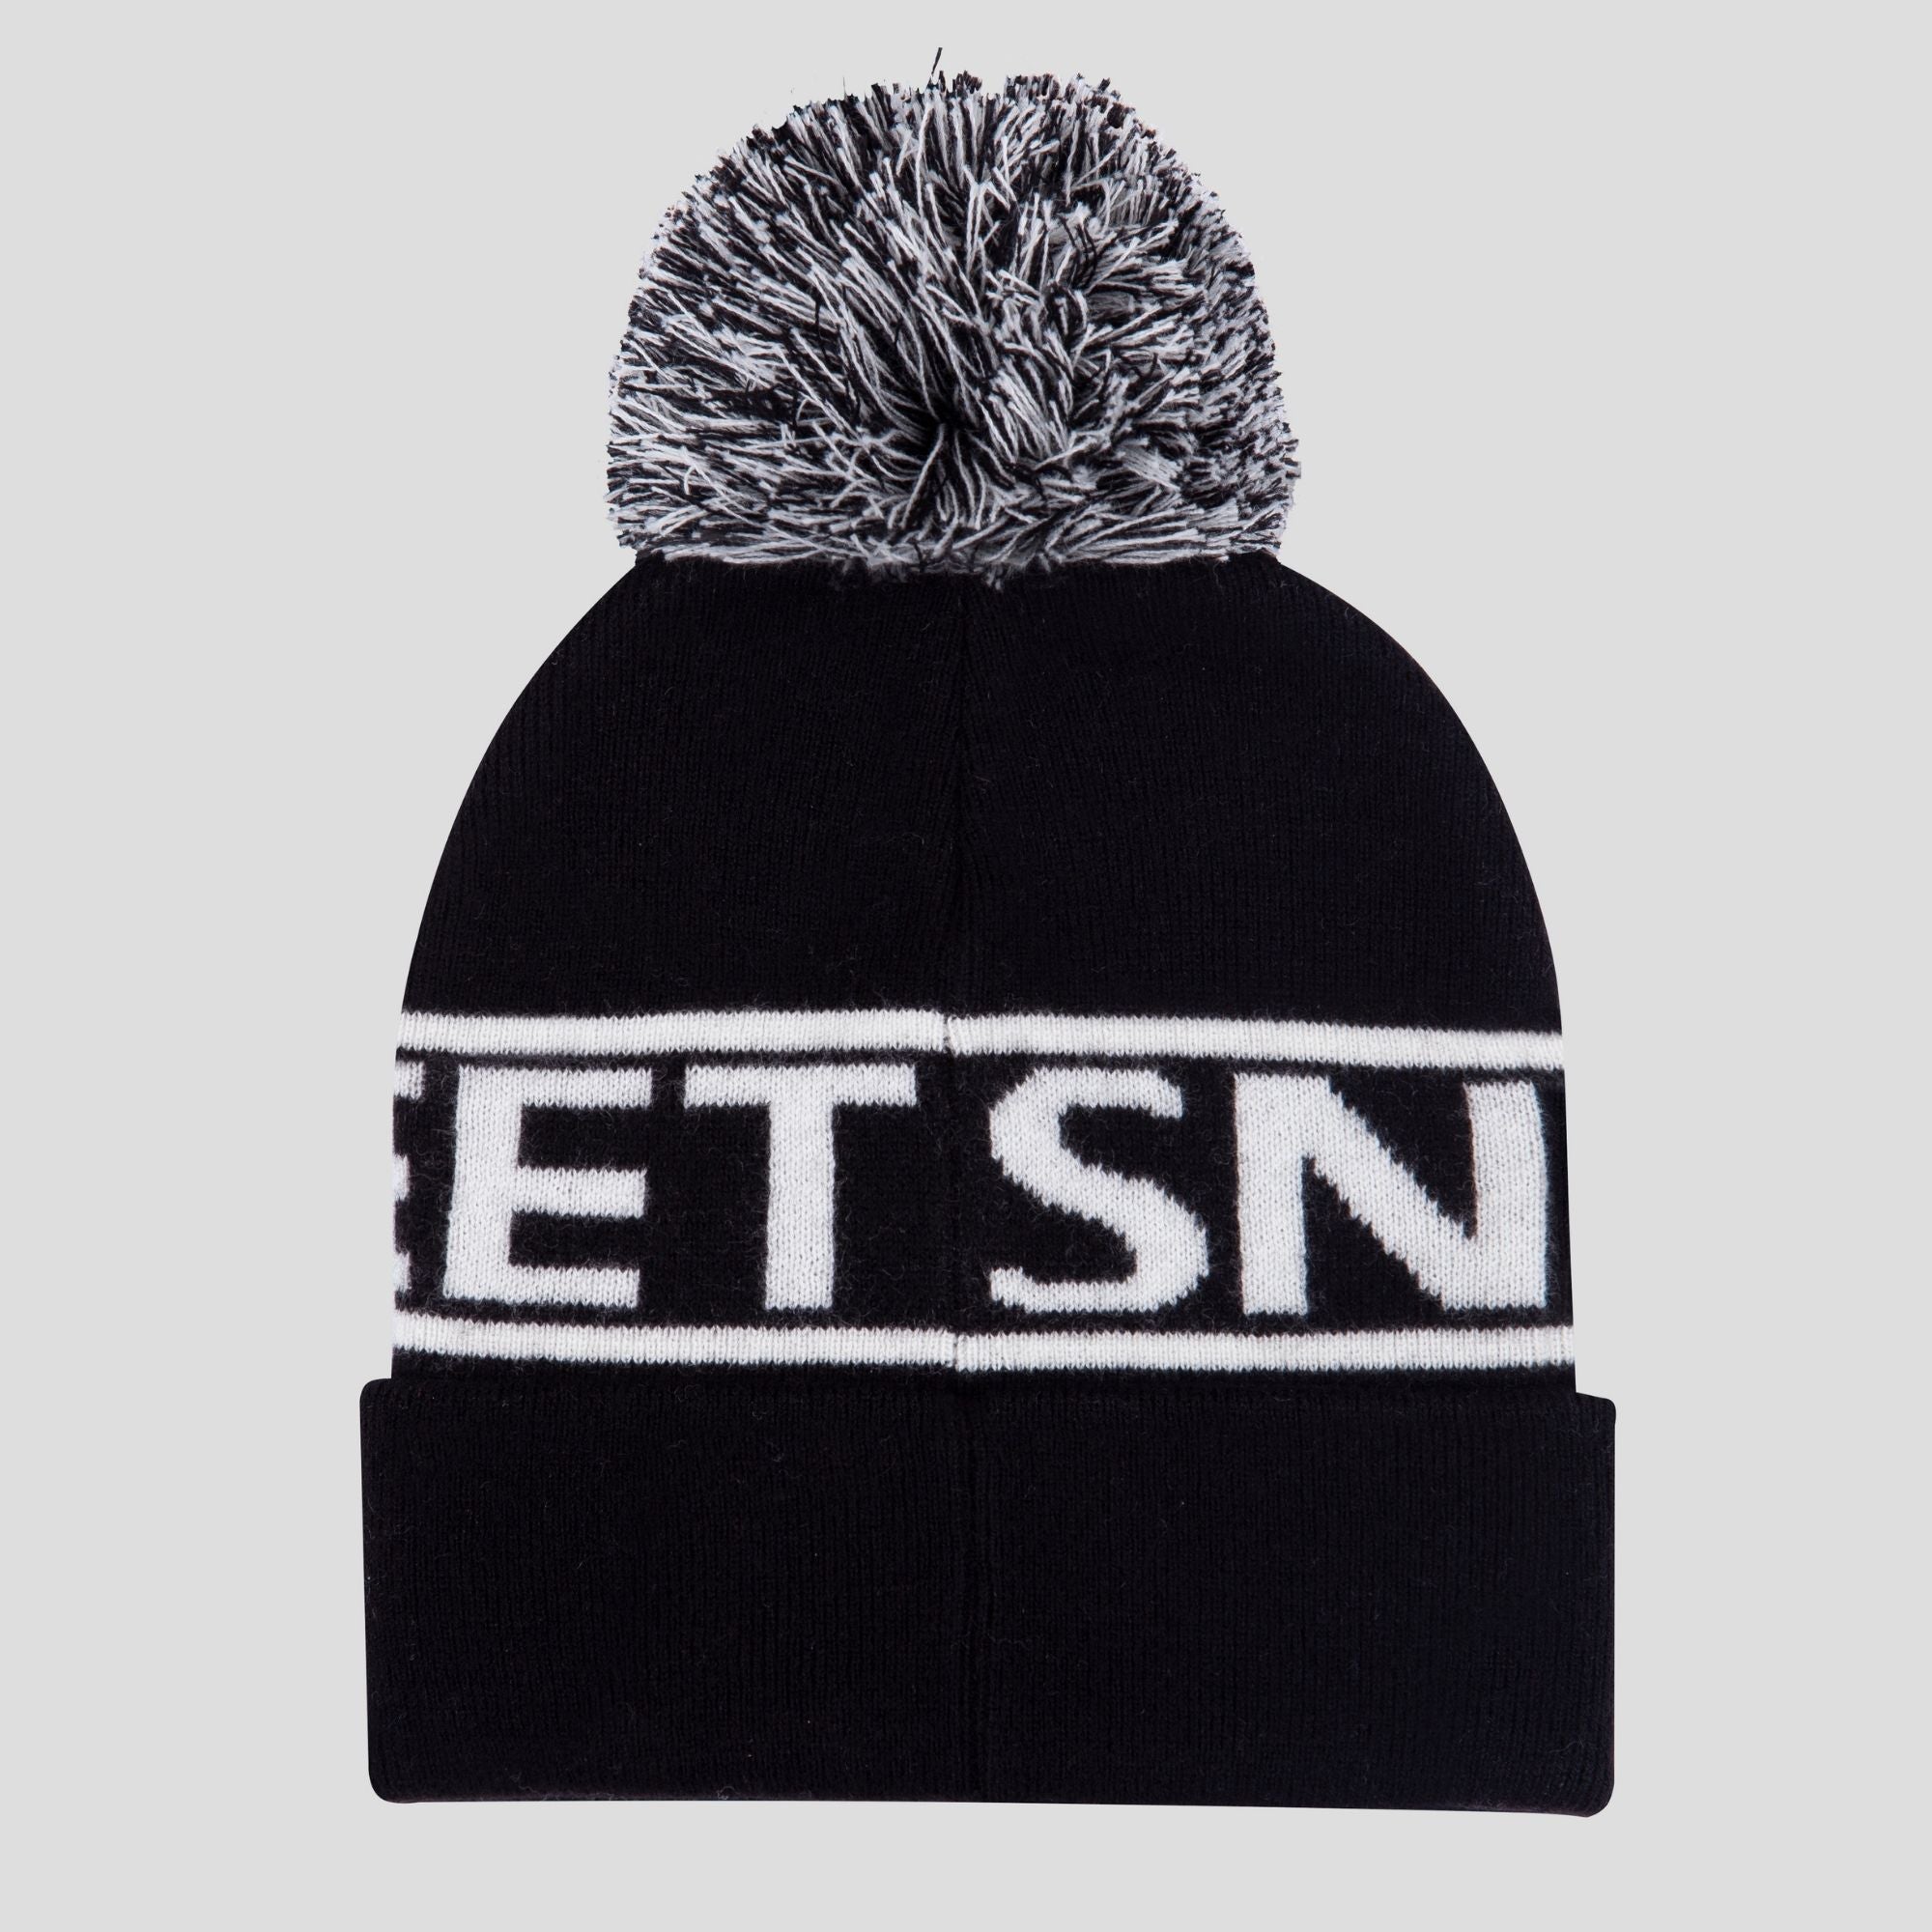 Cappello invernale lavorato a maglia con logo Snowfeet | Berretto Nero